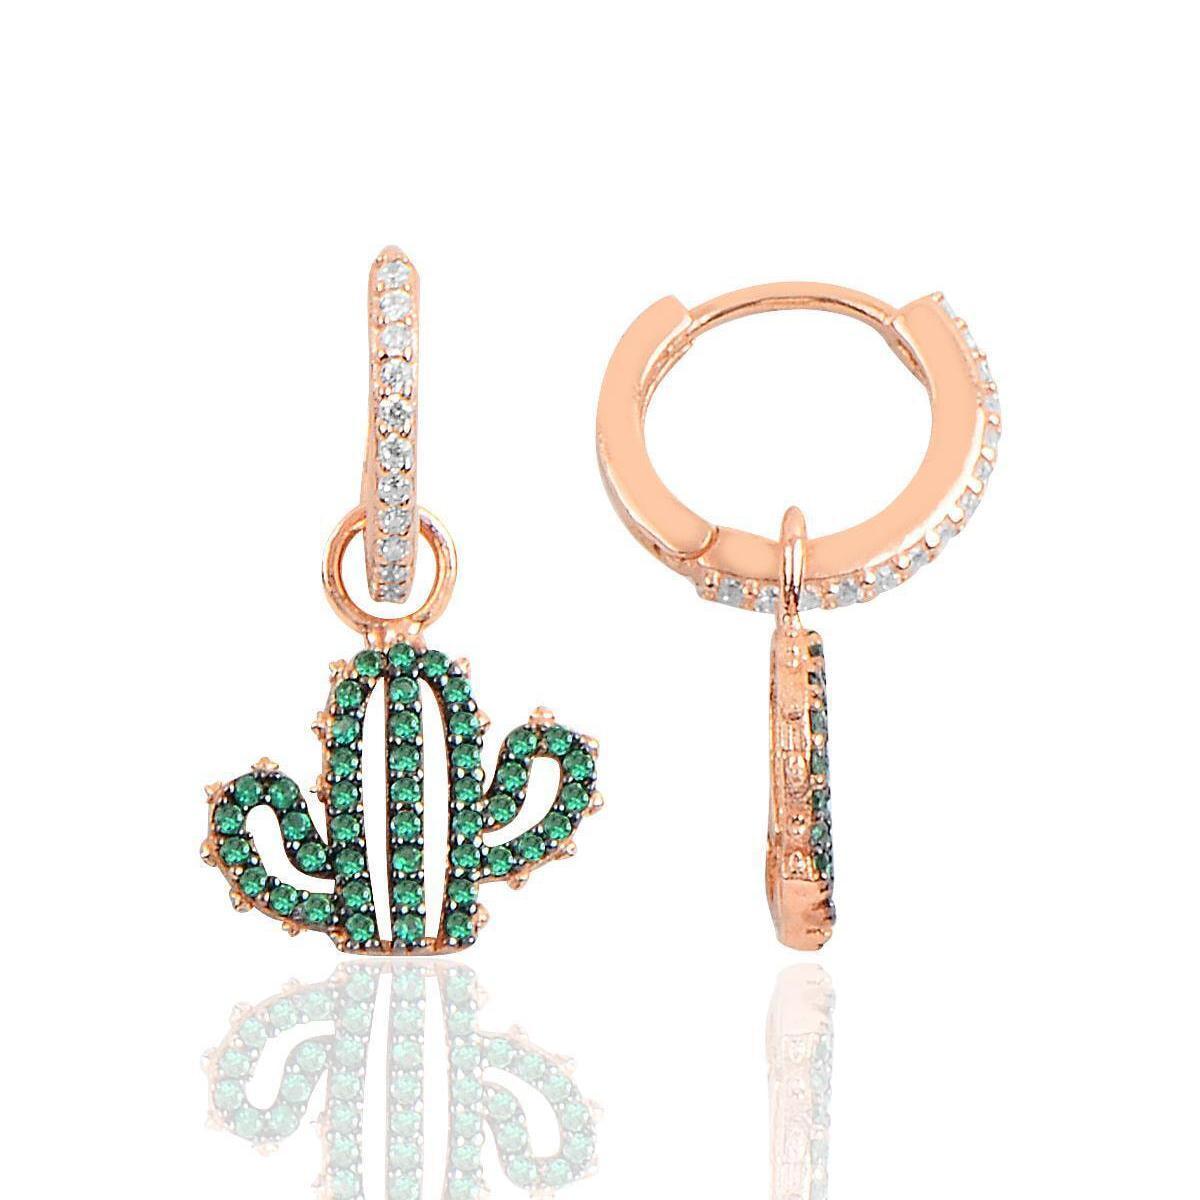 Huggie Cactus Earrings • Sterling Silver Cactus Earrings - Trending Silver Gifts